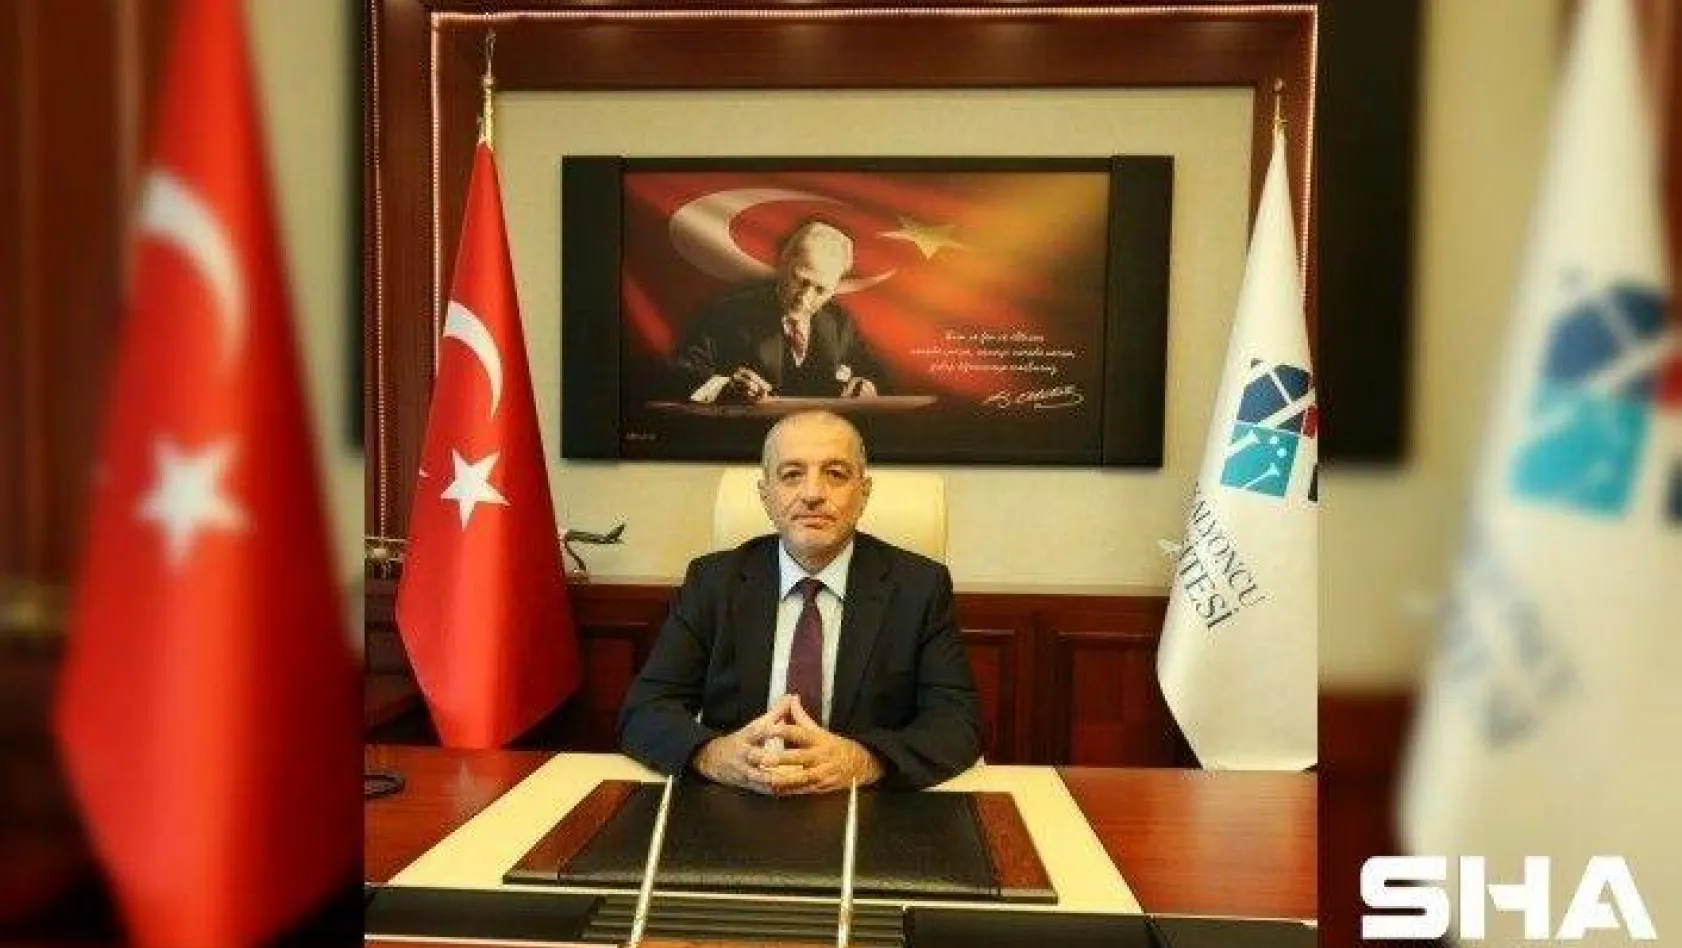 Hasan Kalyoncu Üniversitesi'nin yeni rektörü Prof. Dr. Türkay Dereli oldu